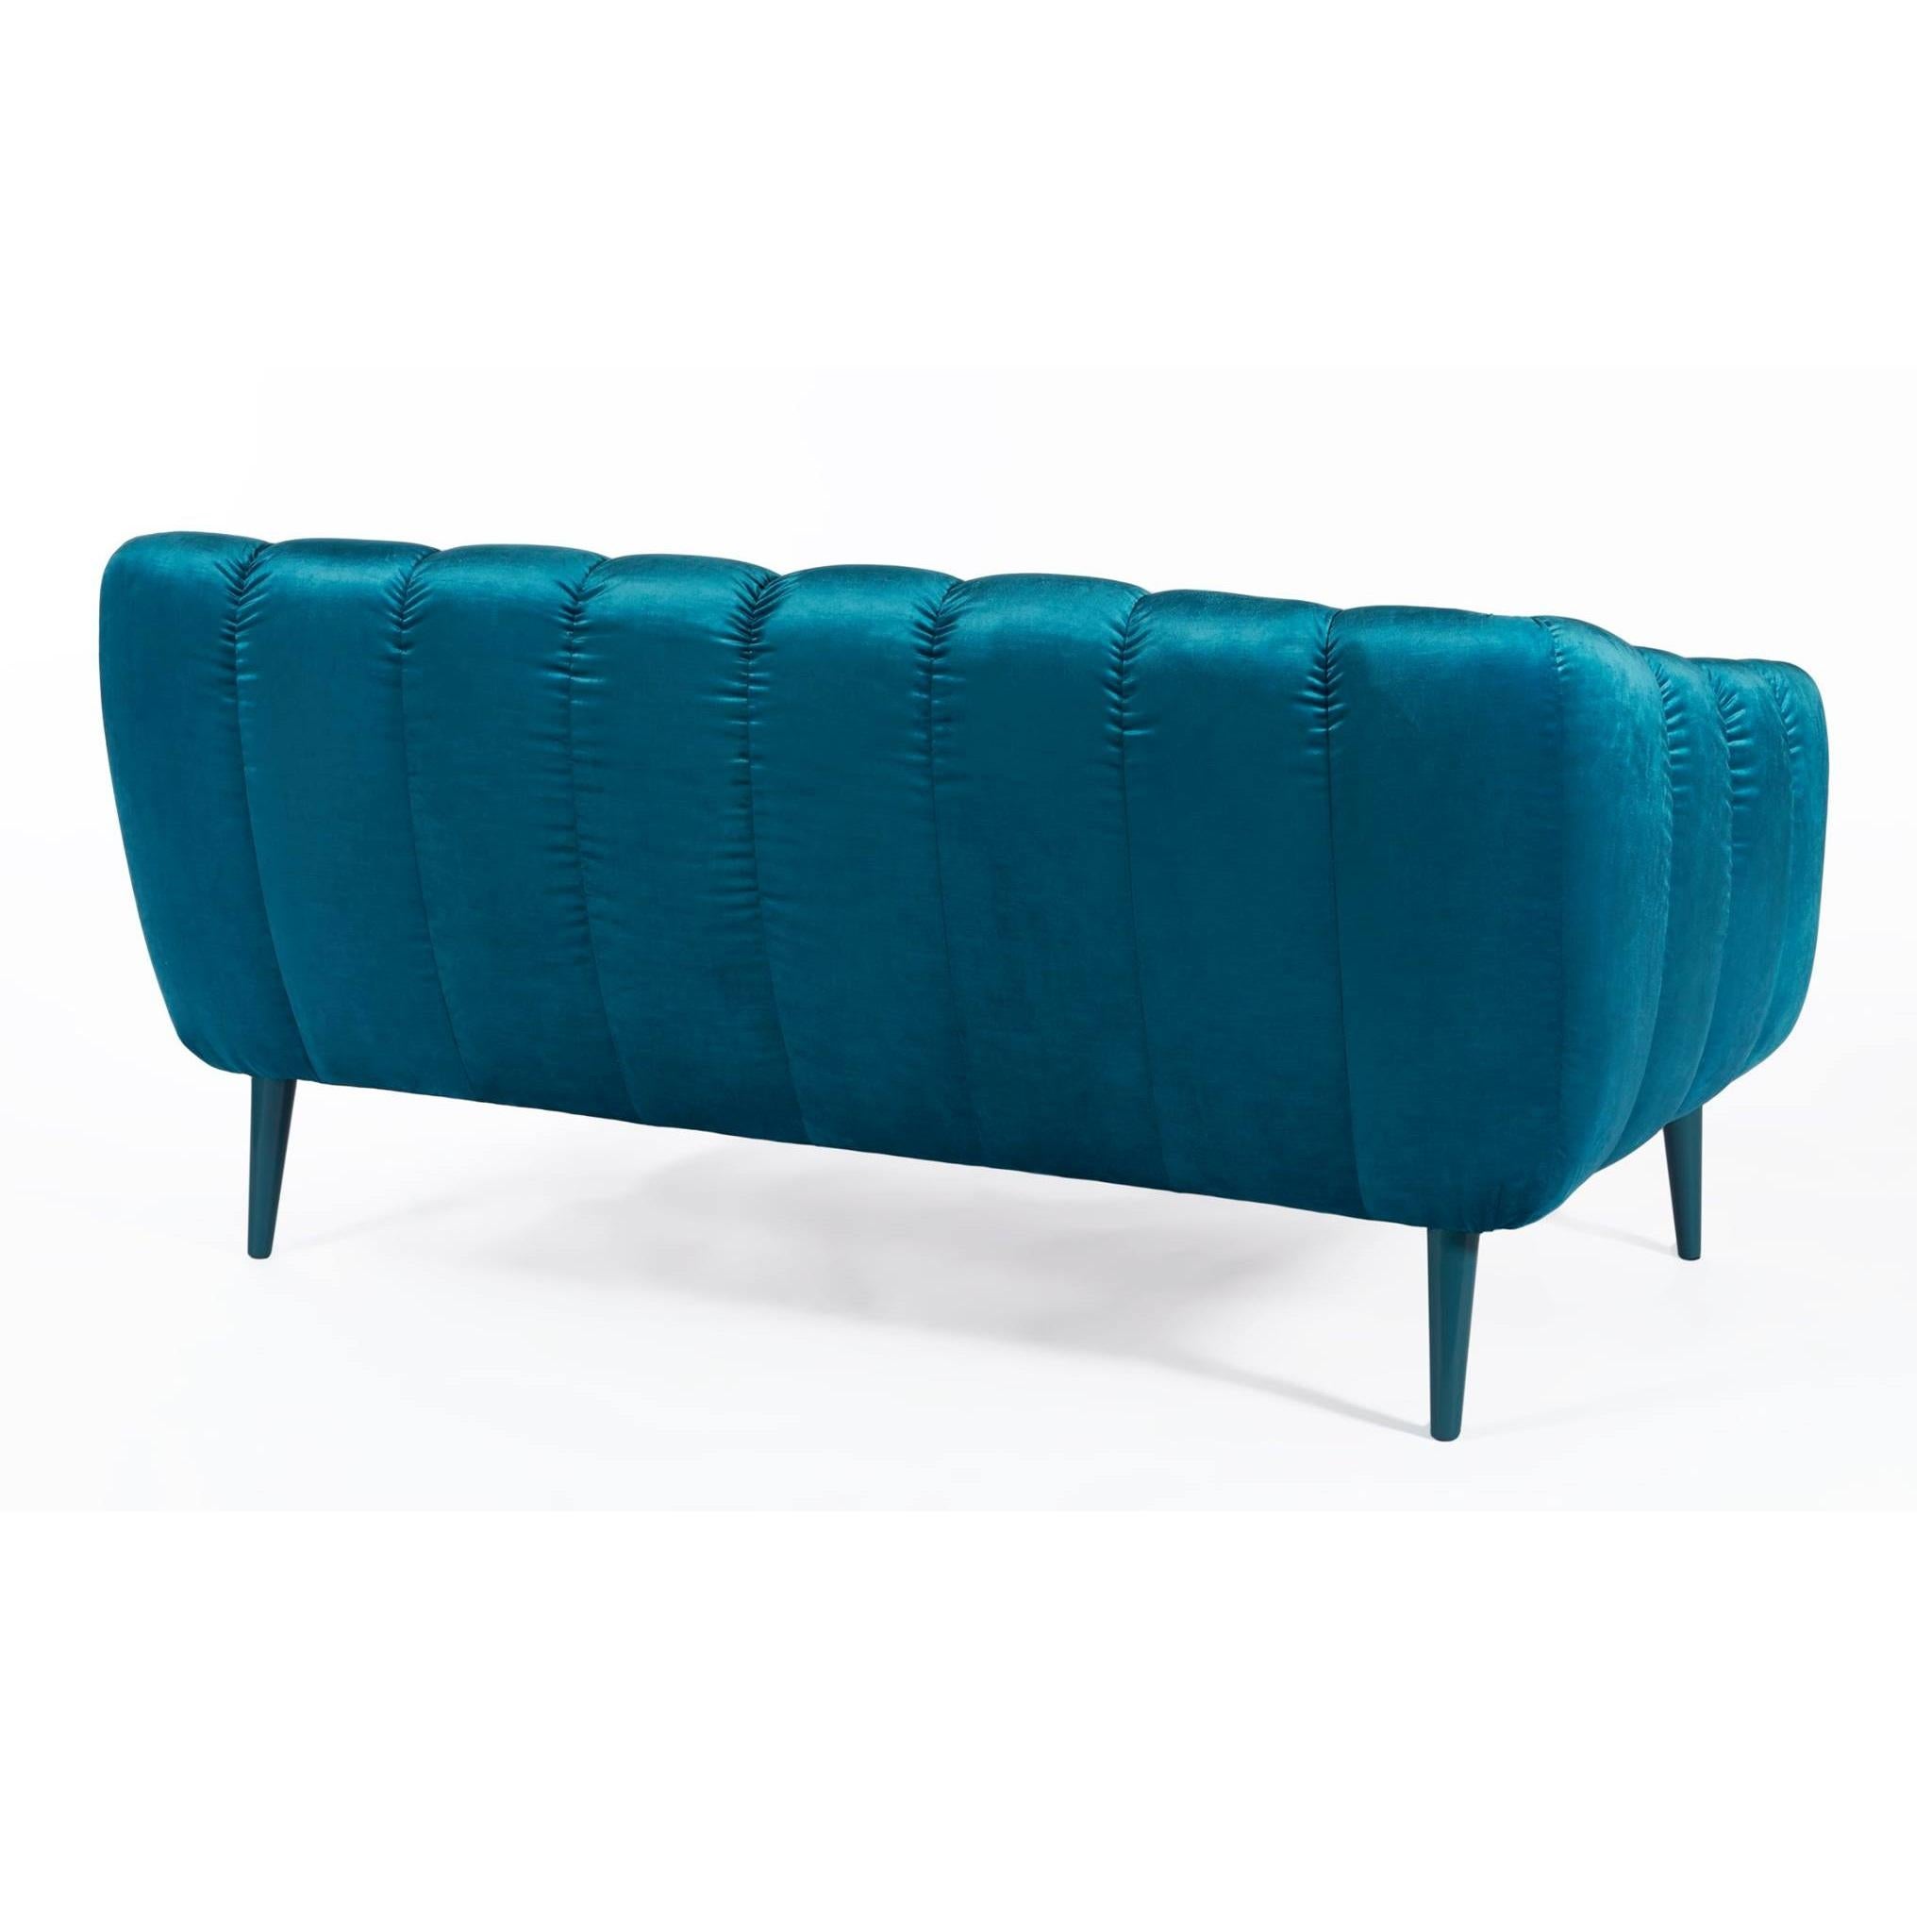 Dieses Sofa wurde mit einer sorgfältigen, aber spielerischen Aufmerksamkeit für Geometrie und Form entworfen und hat einen glamourösen Sci-Fi-Retro-Look der 60er und 70er Jahre. Die gesteppte Polsterung erinnert an die Ästhetik der Jahrhundertmitte,